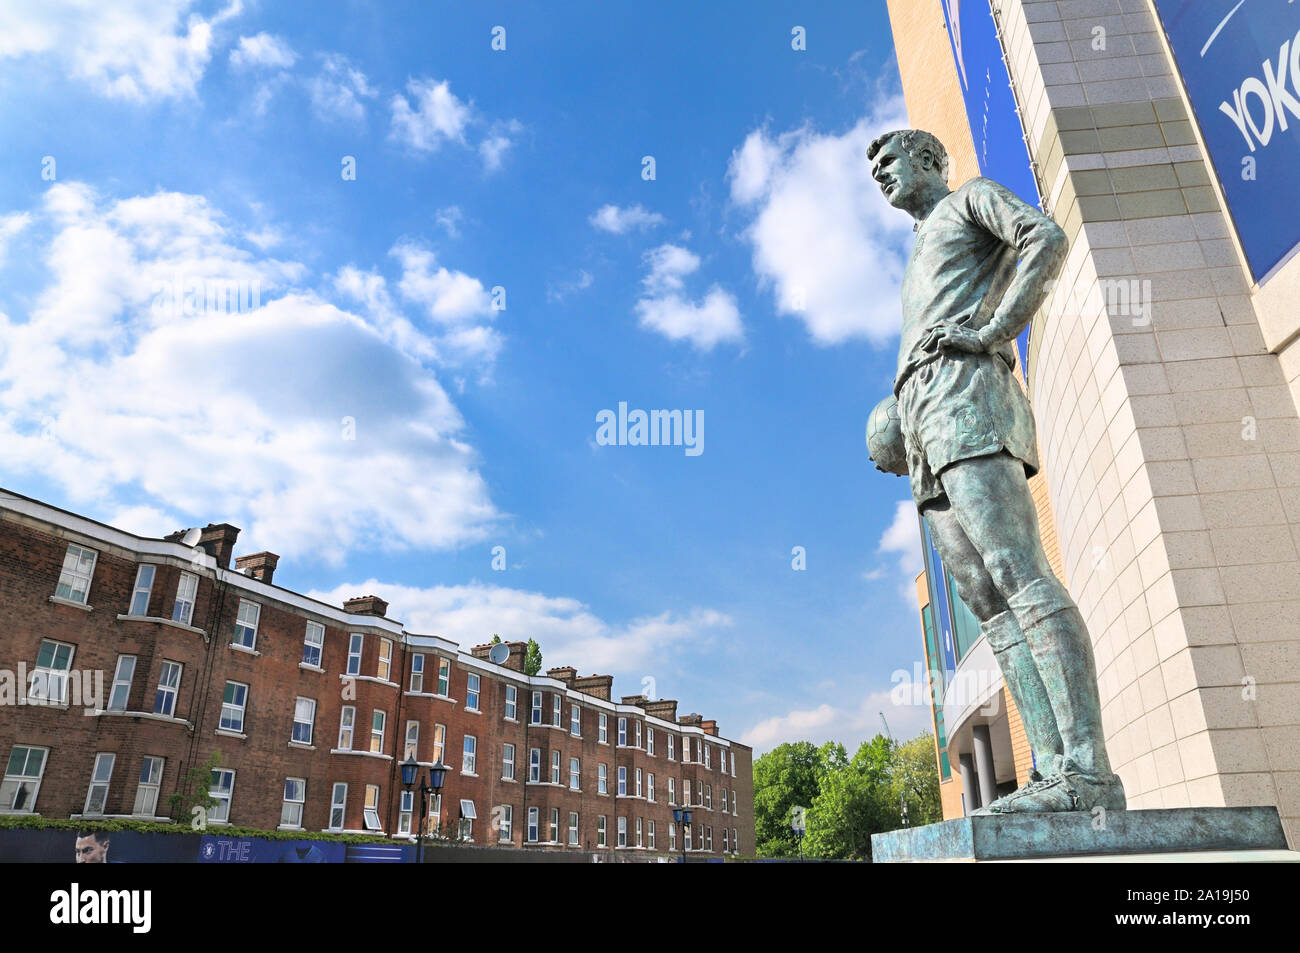 Statue en bronze de la légende du football Peter Osgood 'Le Roi de Stamford Bridge' à l'extérieur du Club de Football de Chelsea Stamford Bridge, London, England, UK Banque D'Images